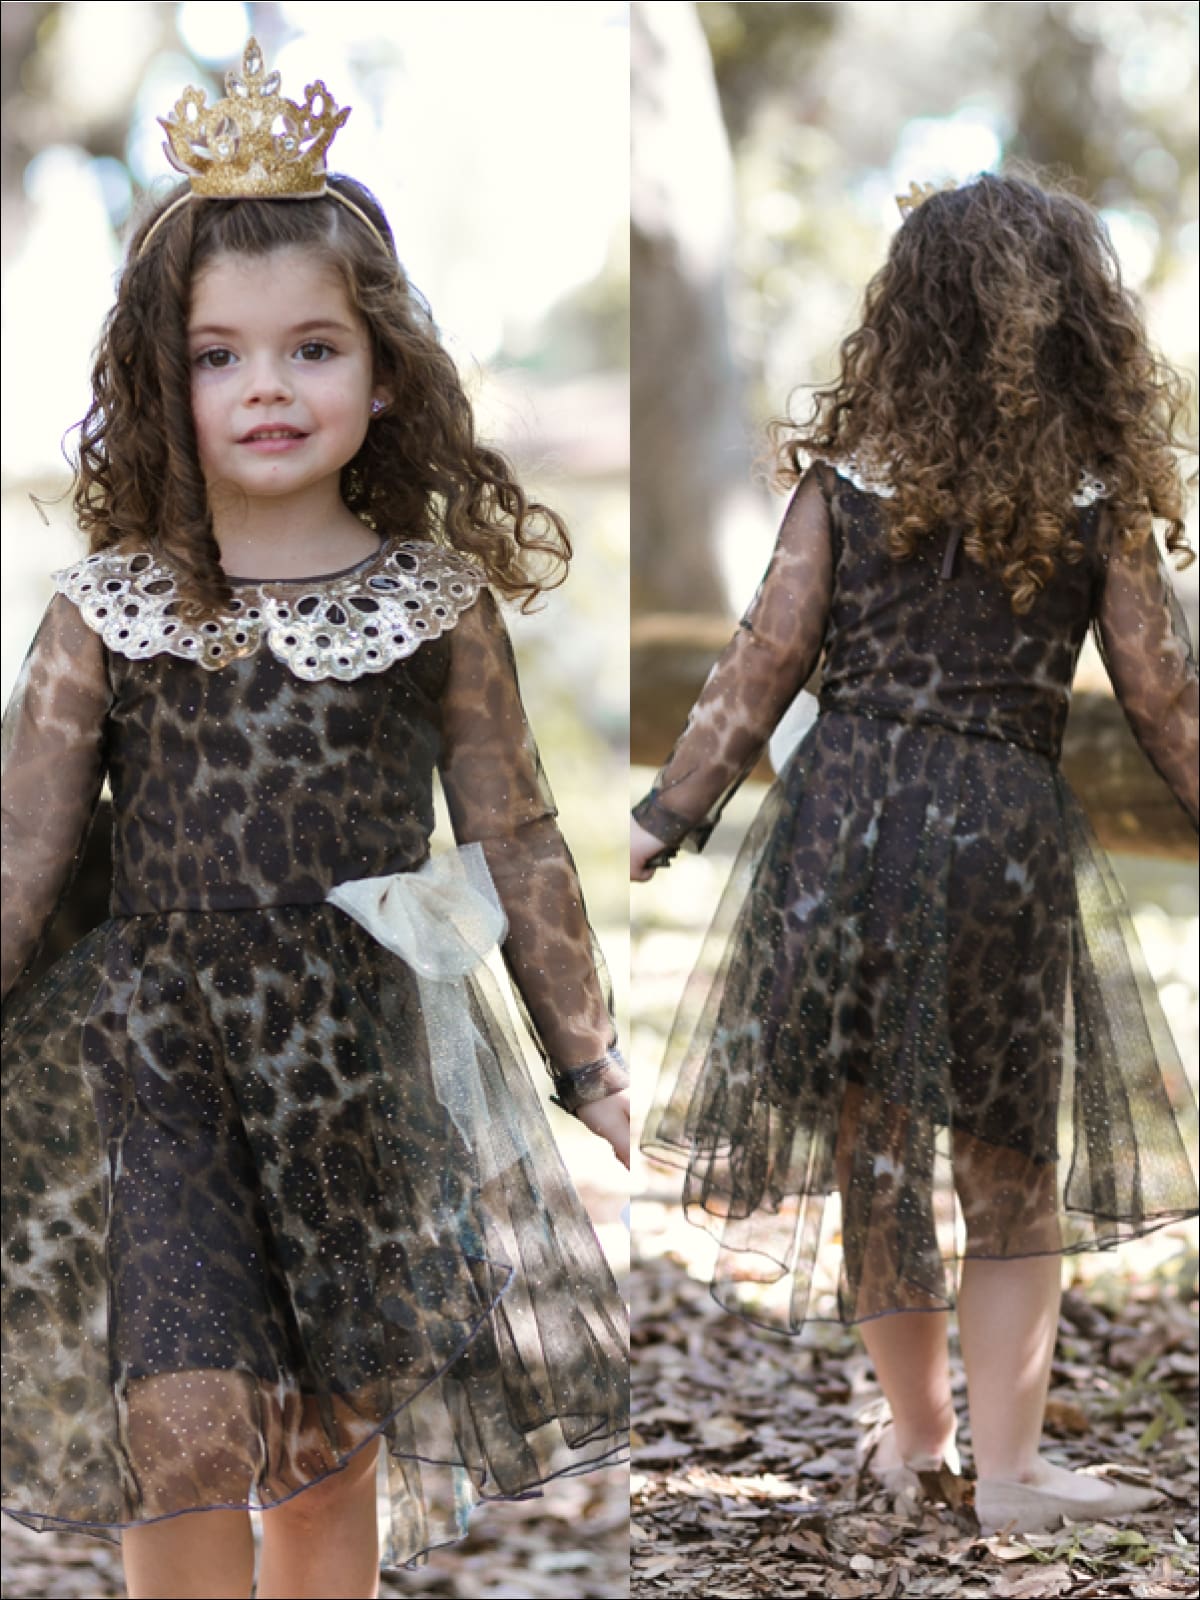 baby girl animal print dress